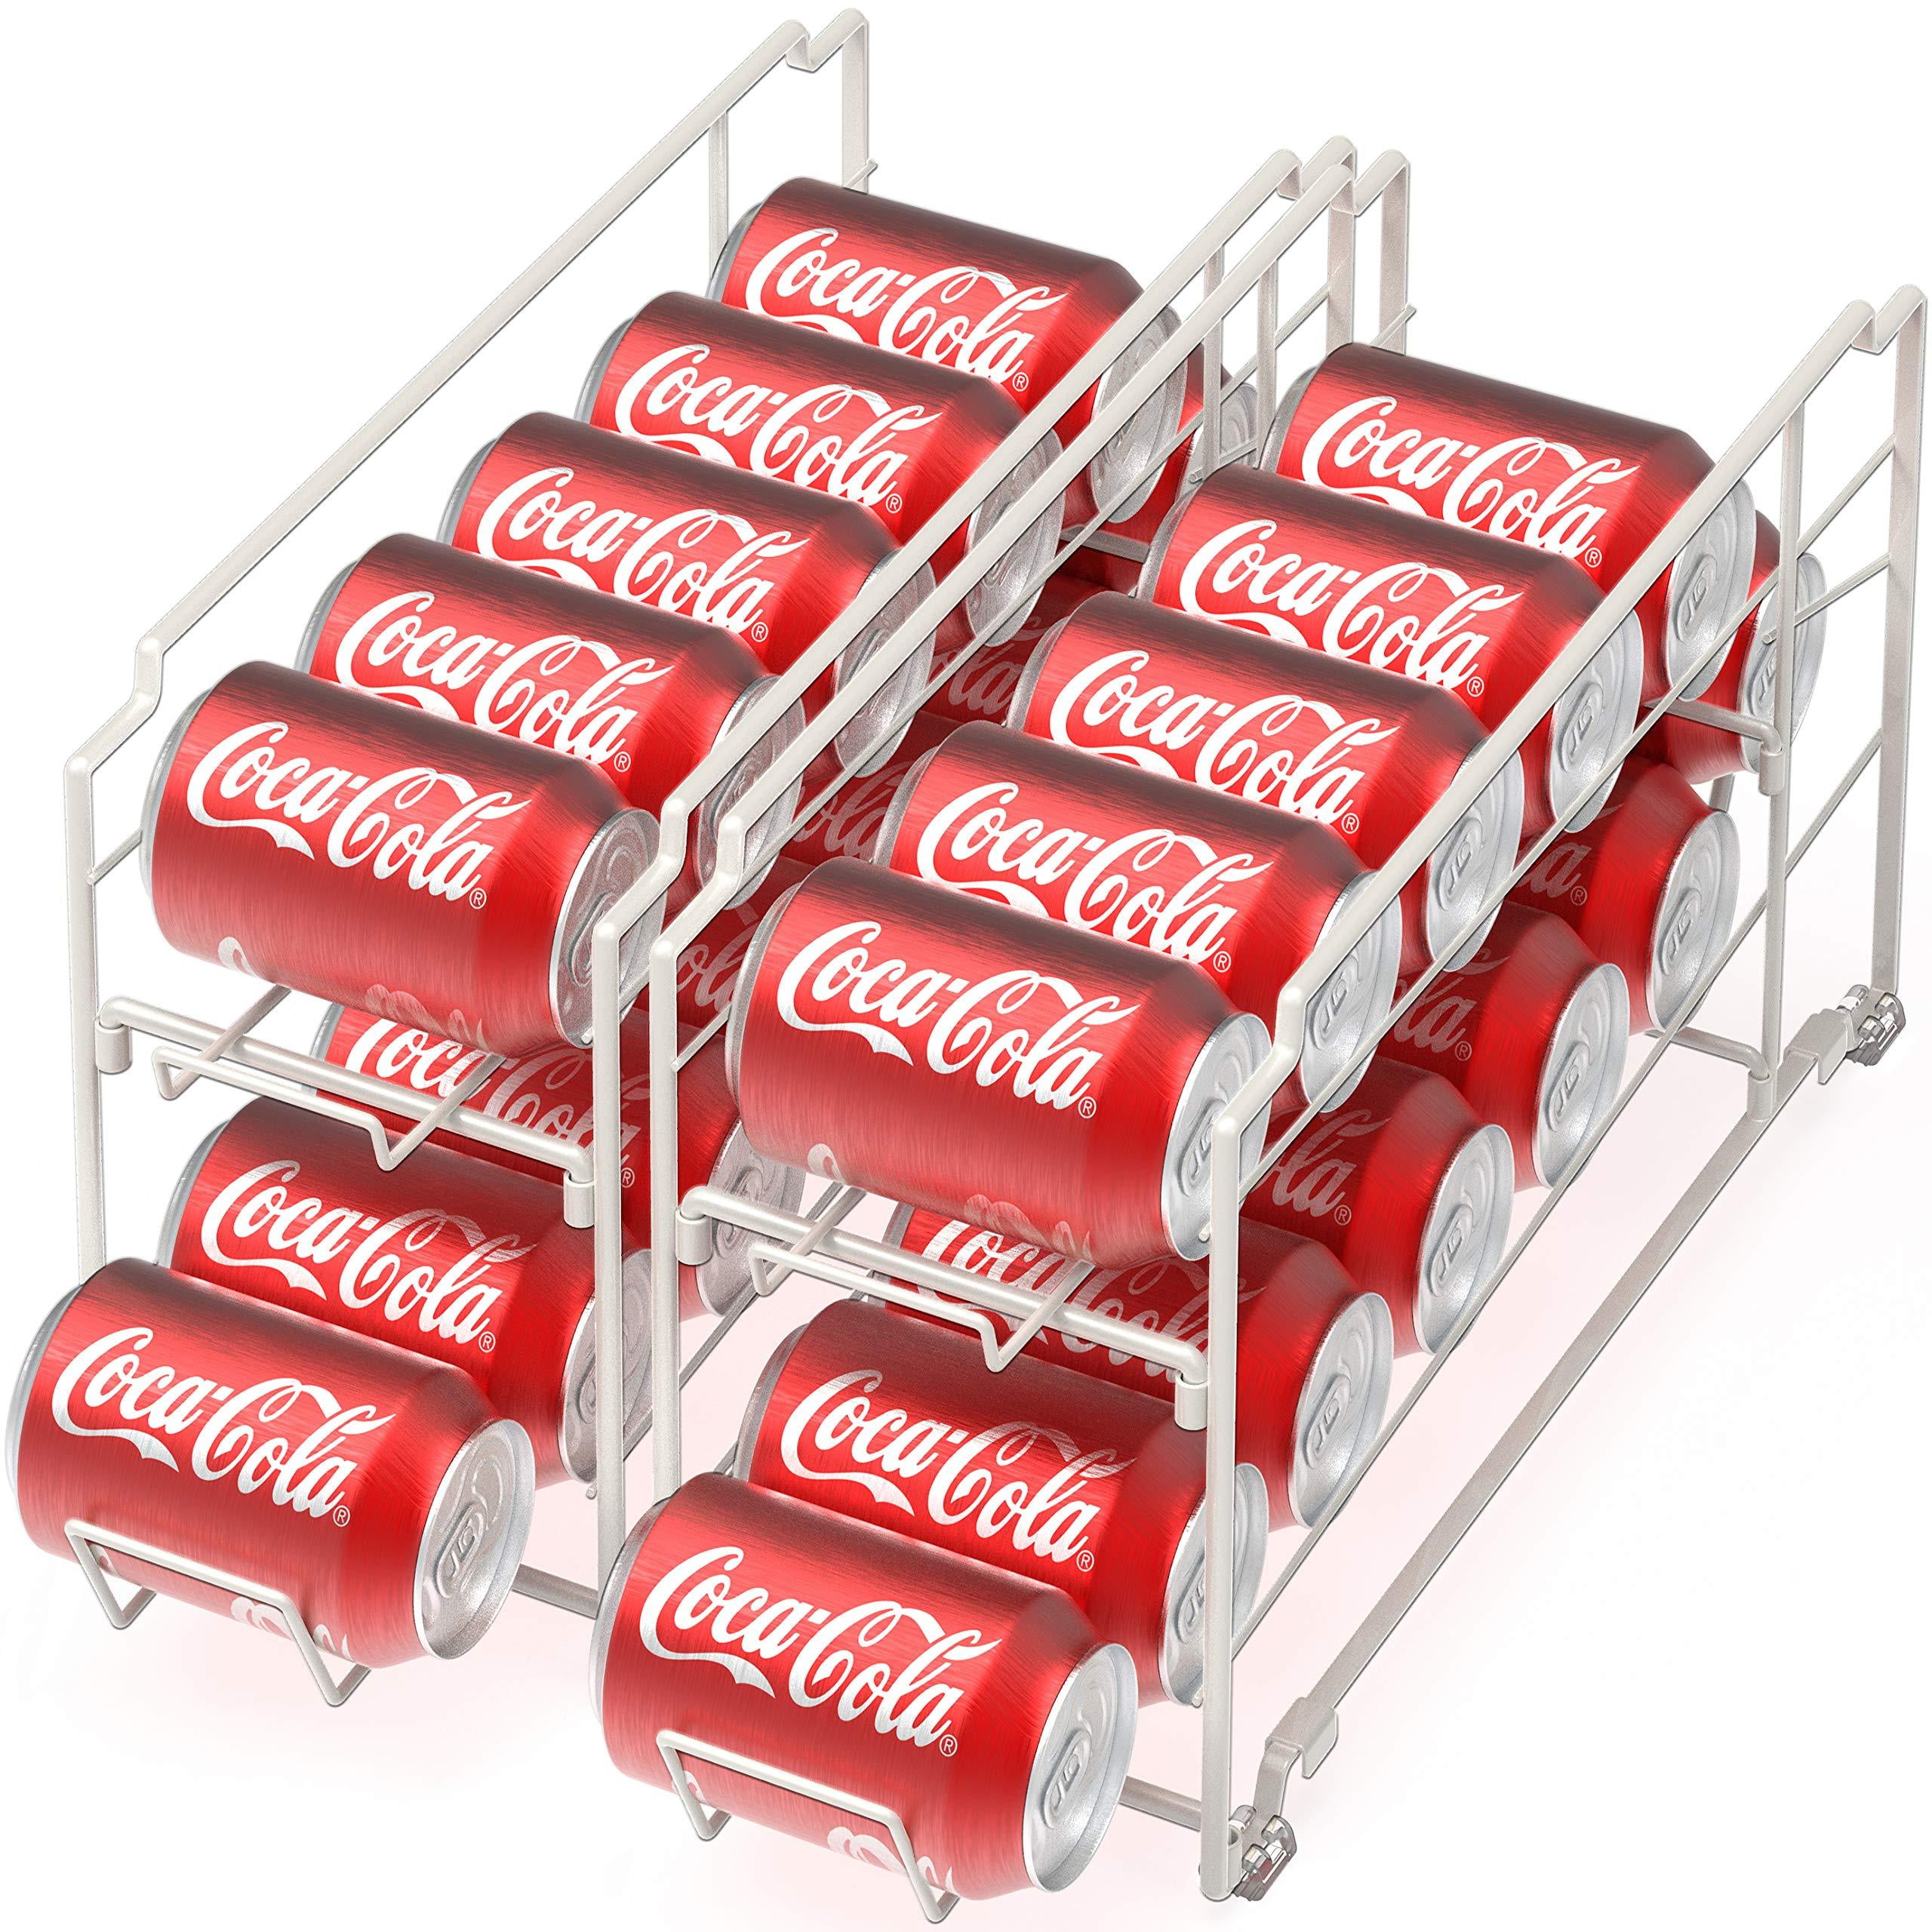 ShellKingdom Stackable Beverage Soda Can Dispenser Organizer Rack, [2 Set]  Rolling Beverage Rack, Can Storage Holder for Pantry Refrigerator (Black) -  Yahoo Shopping